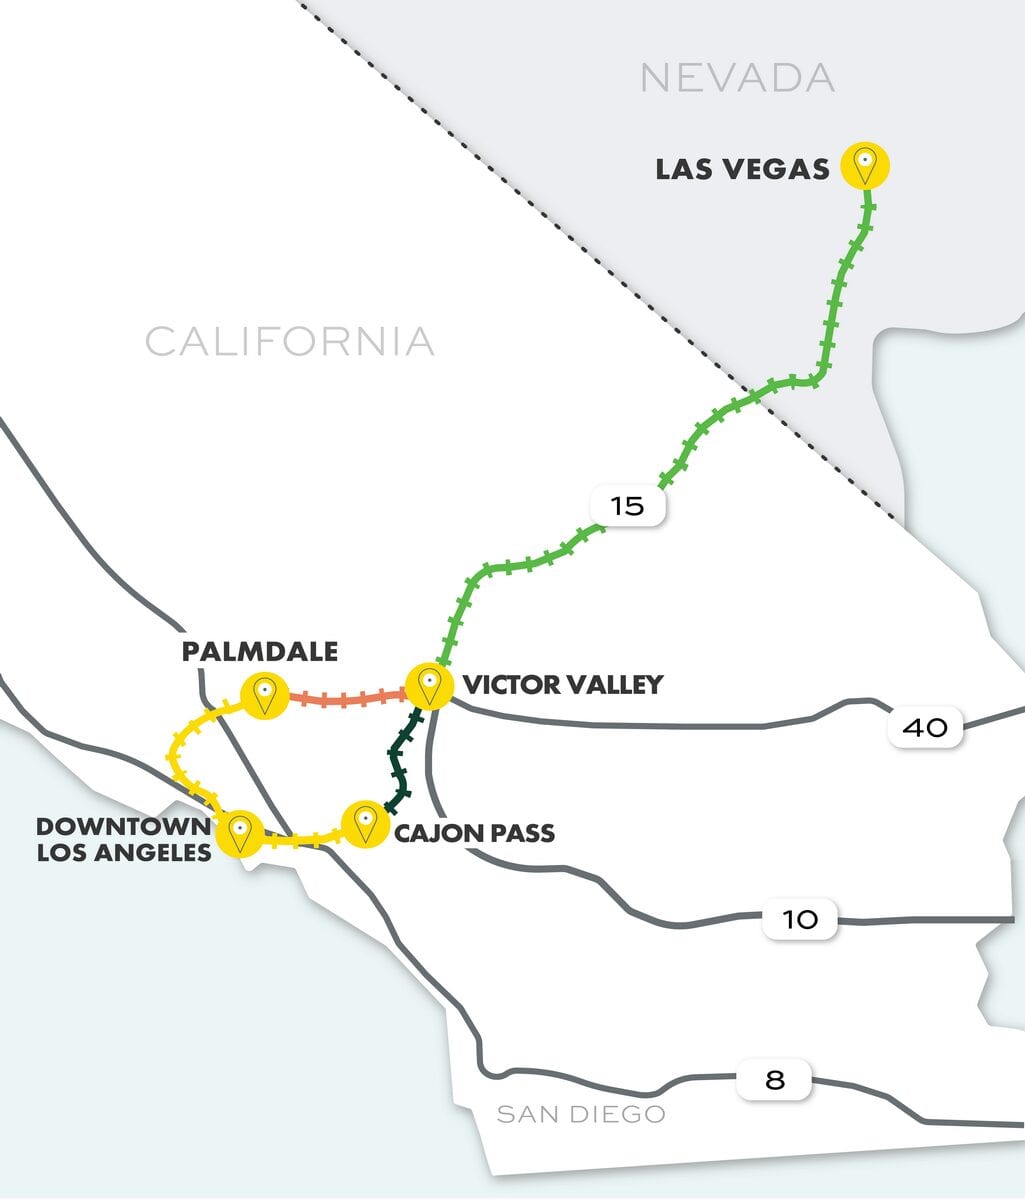 Brightline West 2021 Las Vegas Route Map Overview 